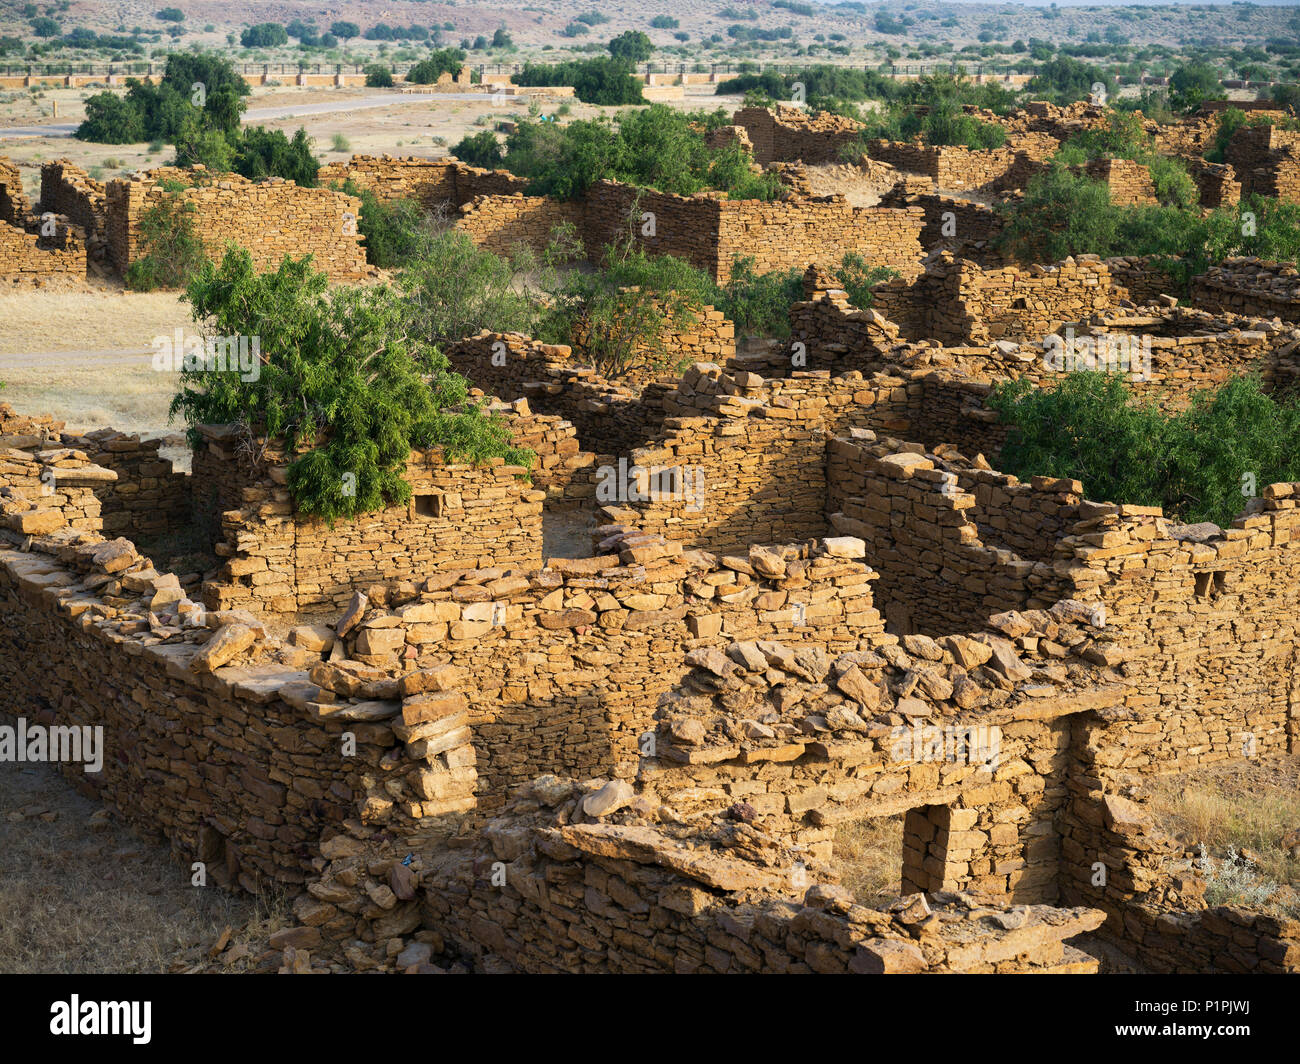 Village abandonné dans le district de Jaisalmer Rajasthan. Kuldhara a acquis une réputation de site hanté ; Jiyai, Rajasthan, Inde Banque D'Images